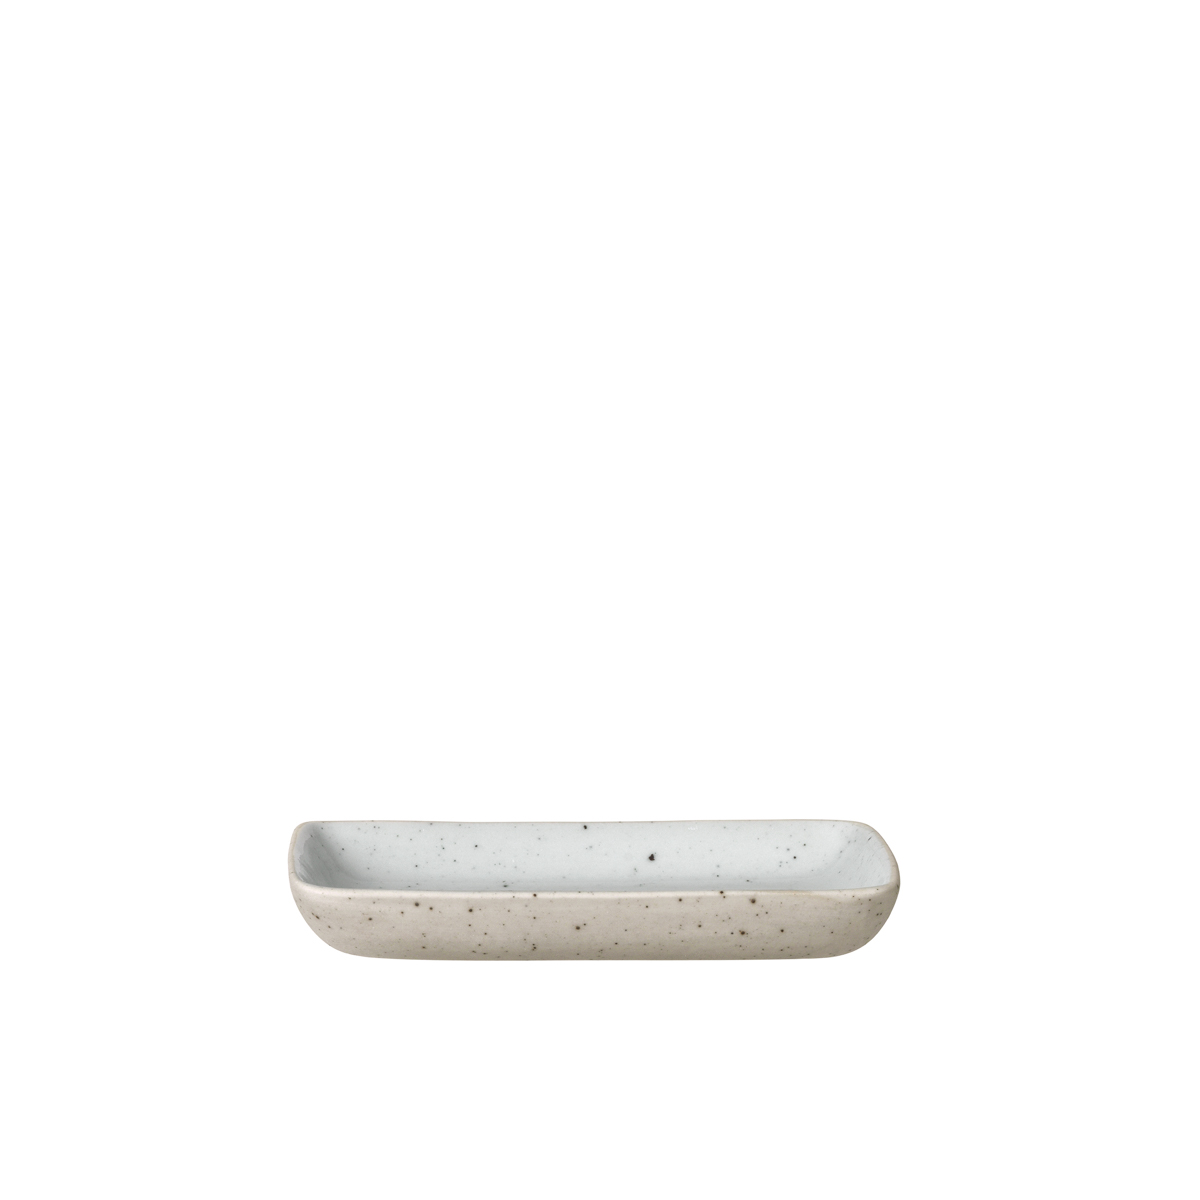 Snack Teller -SABLO- Cloud Size S. Material: Keramik. Von Blomus.